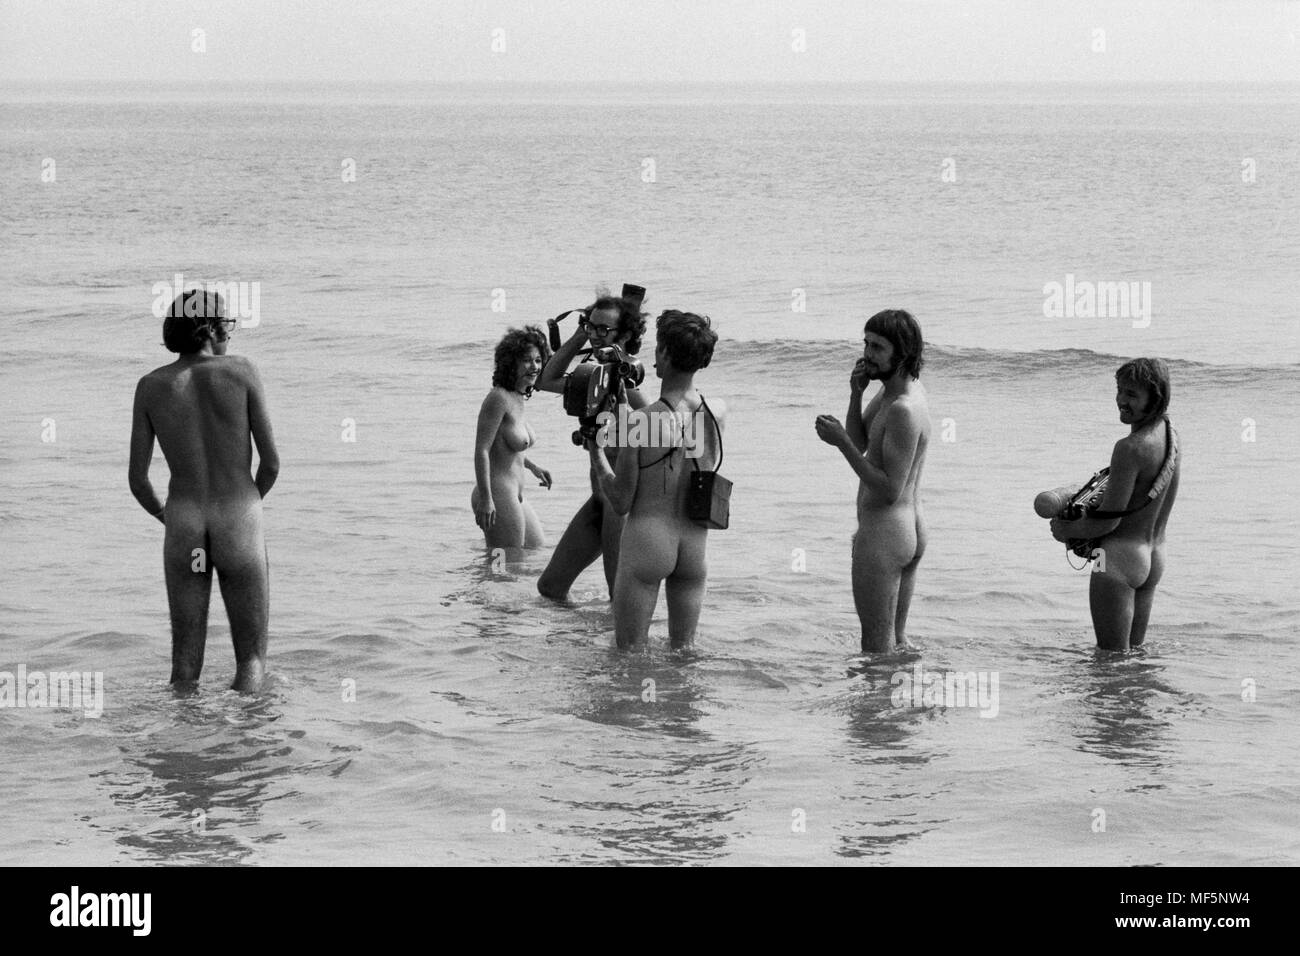 Un equipo de televisión en el 1970 en la Isla de Wight Festival pop, filmando los hippies flaco inmersión en agua dulce bahía para un informe de noticias. Guardias Hippy había ordenado a todos los miembros de la prensa que deseen acceder a la bahía a desnudarse a sí mismos antes de filmar o fotografiar, que los valientes miembros de los medios de comunicación hicieron alegremente. Foto de stock